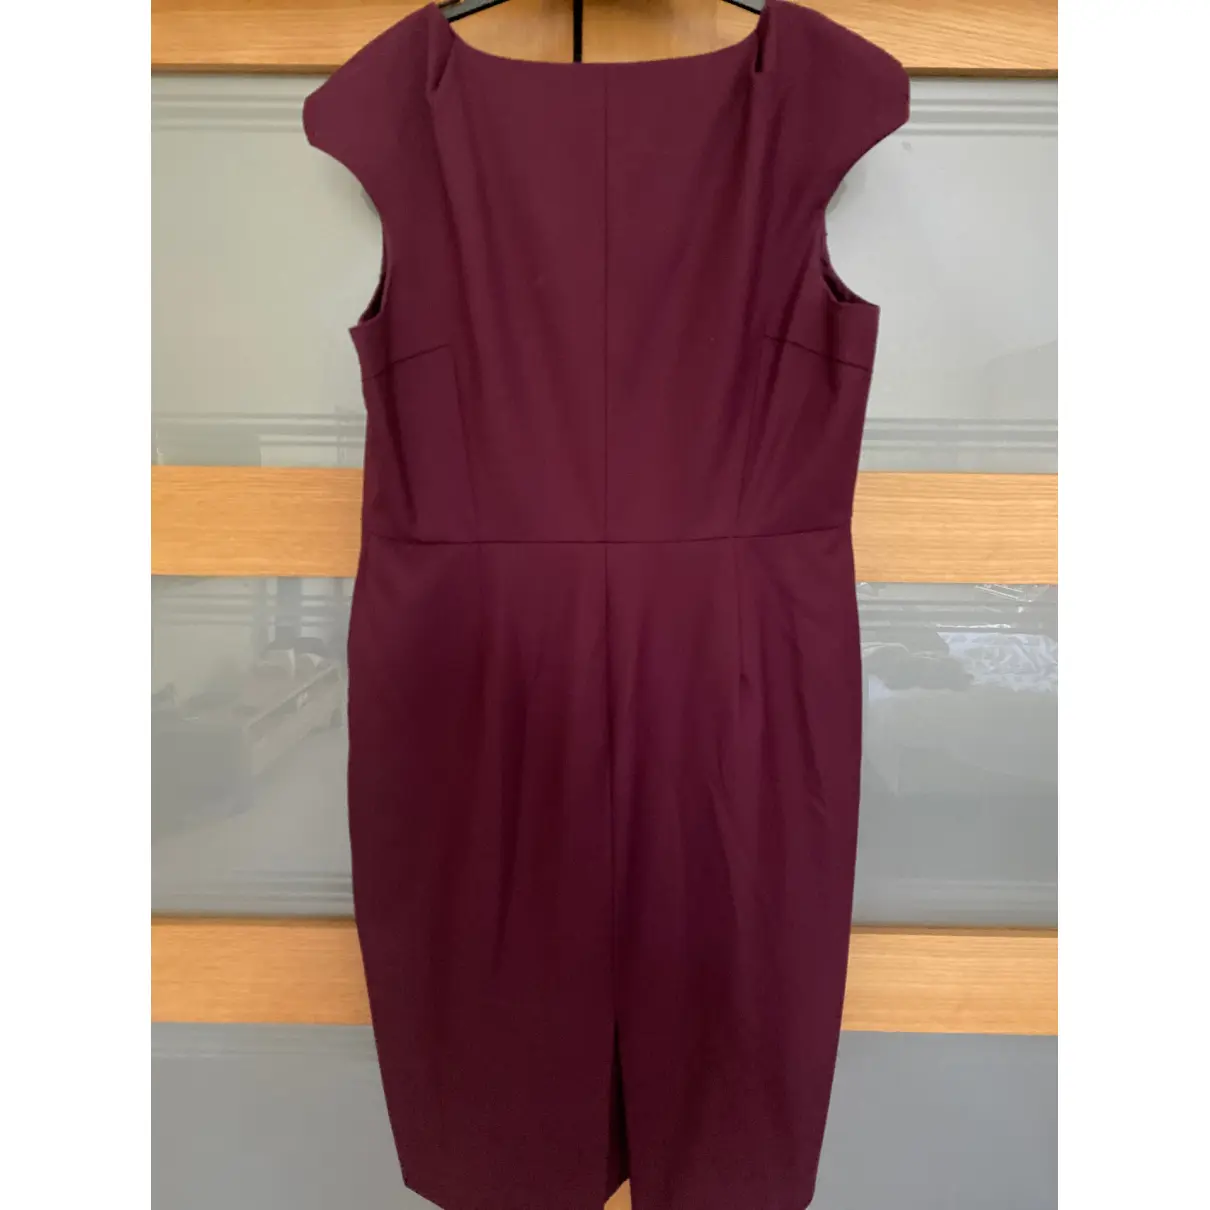 Buy Lk Bennett Wool mid-length dress online